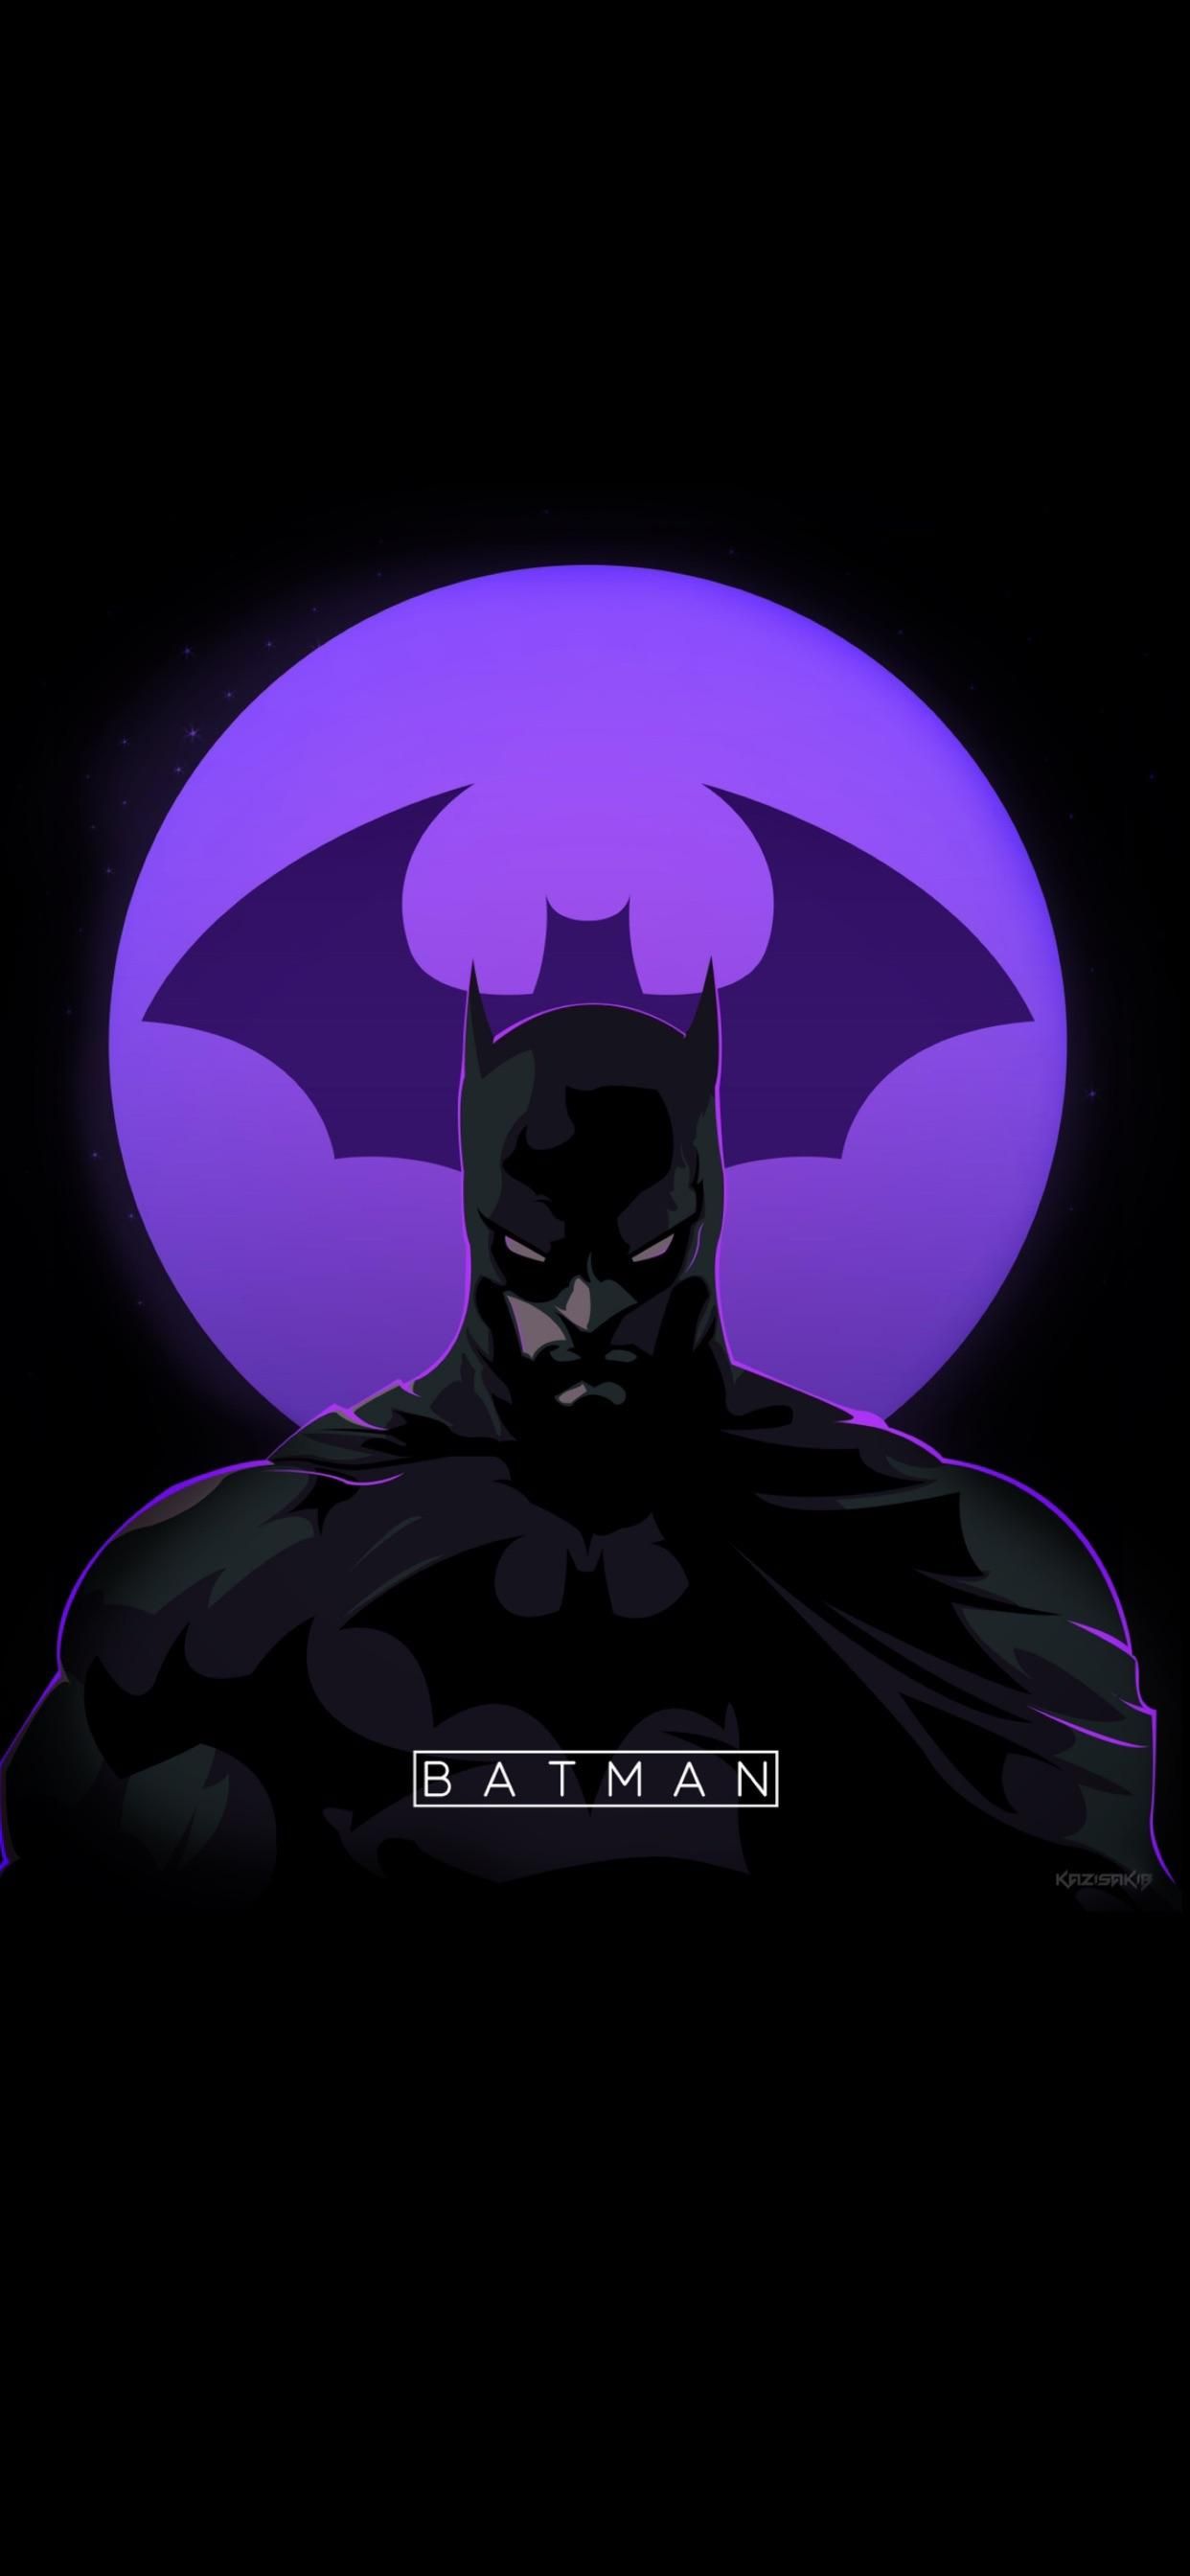 Batman by kzsakib (19:9). iPhone X Wallpaper